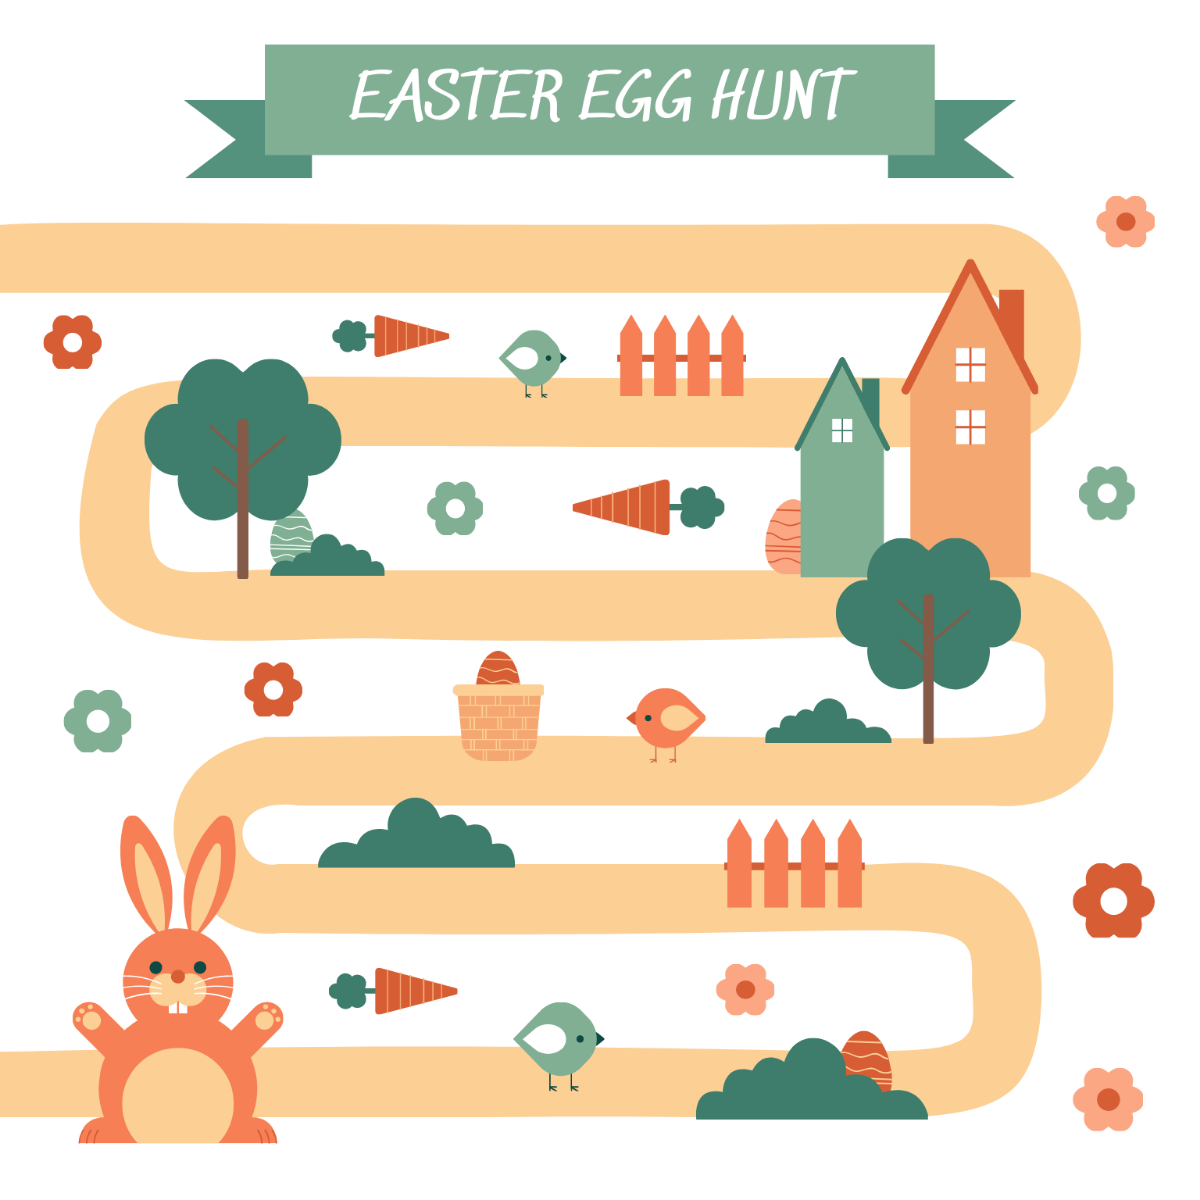 Easter Egg Hunt Image Template